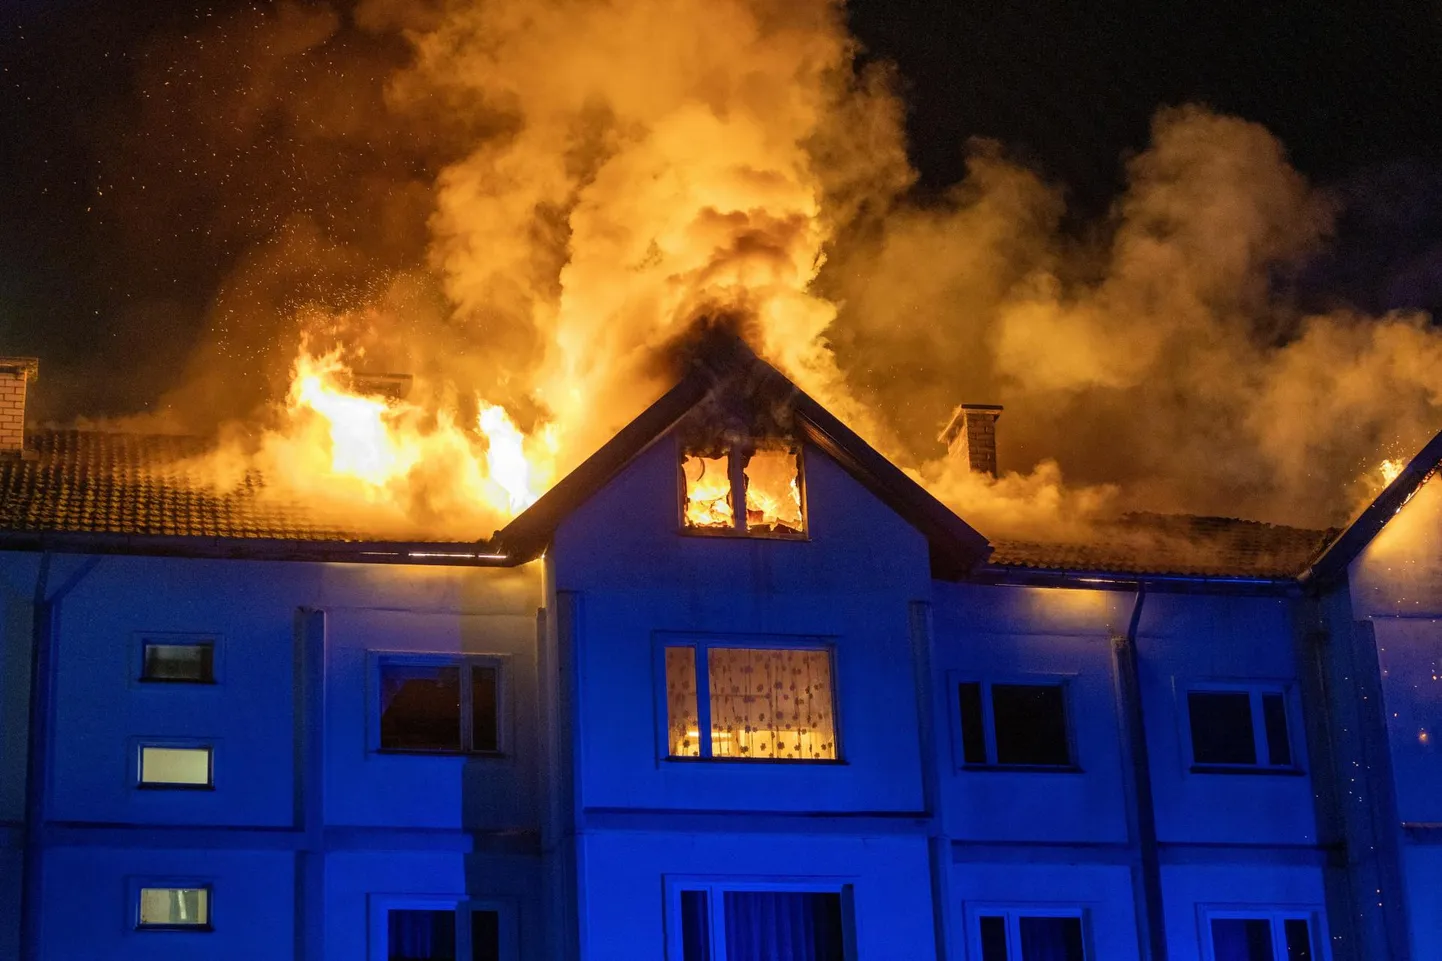 Пожар, вспыхнувший в многоквартирном доме в Вильянди 27 октября.